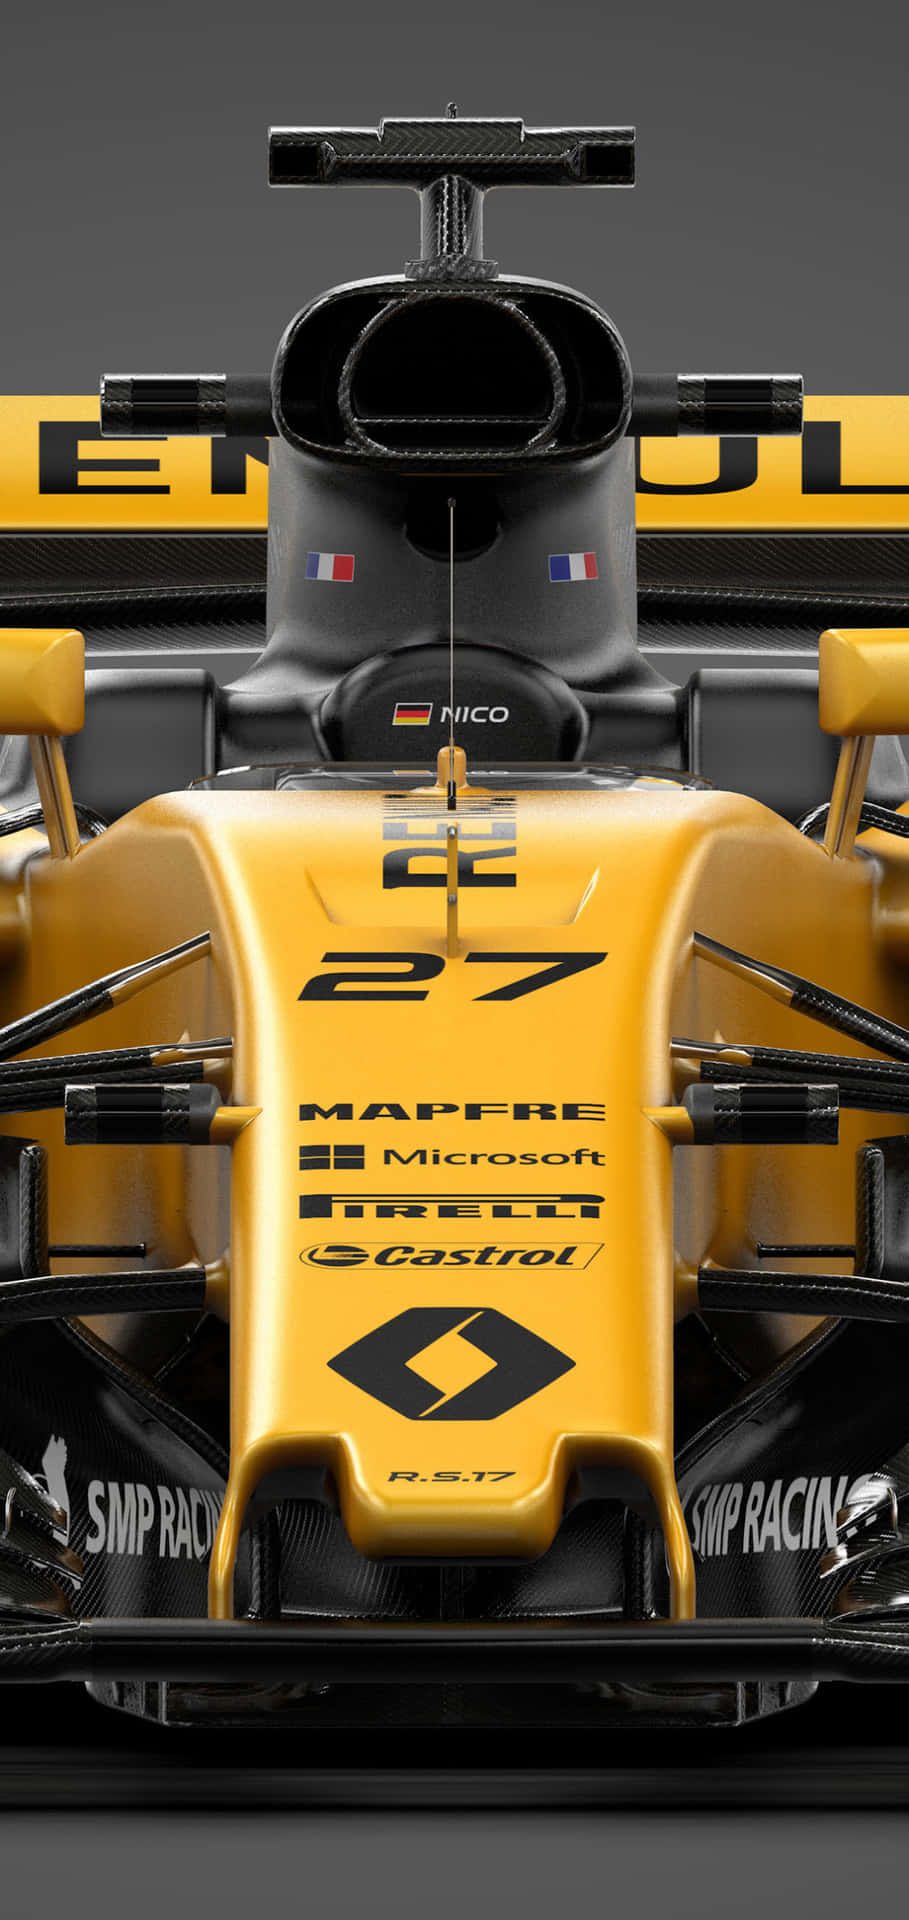 Elwallpaper De Formula 1 Para Iphone. Fondo de pantalla